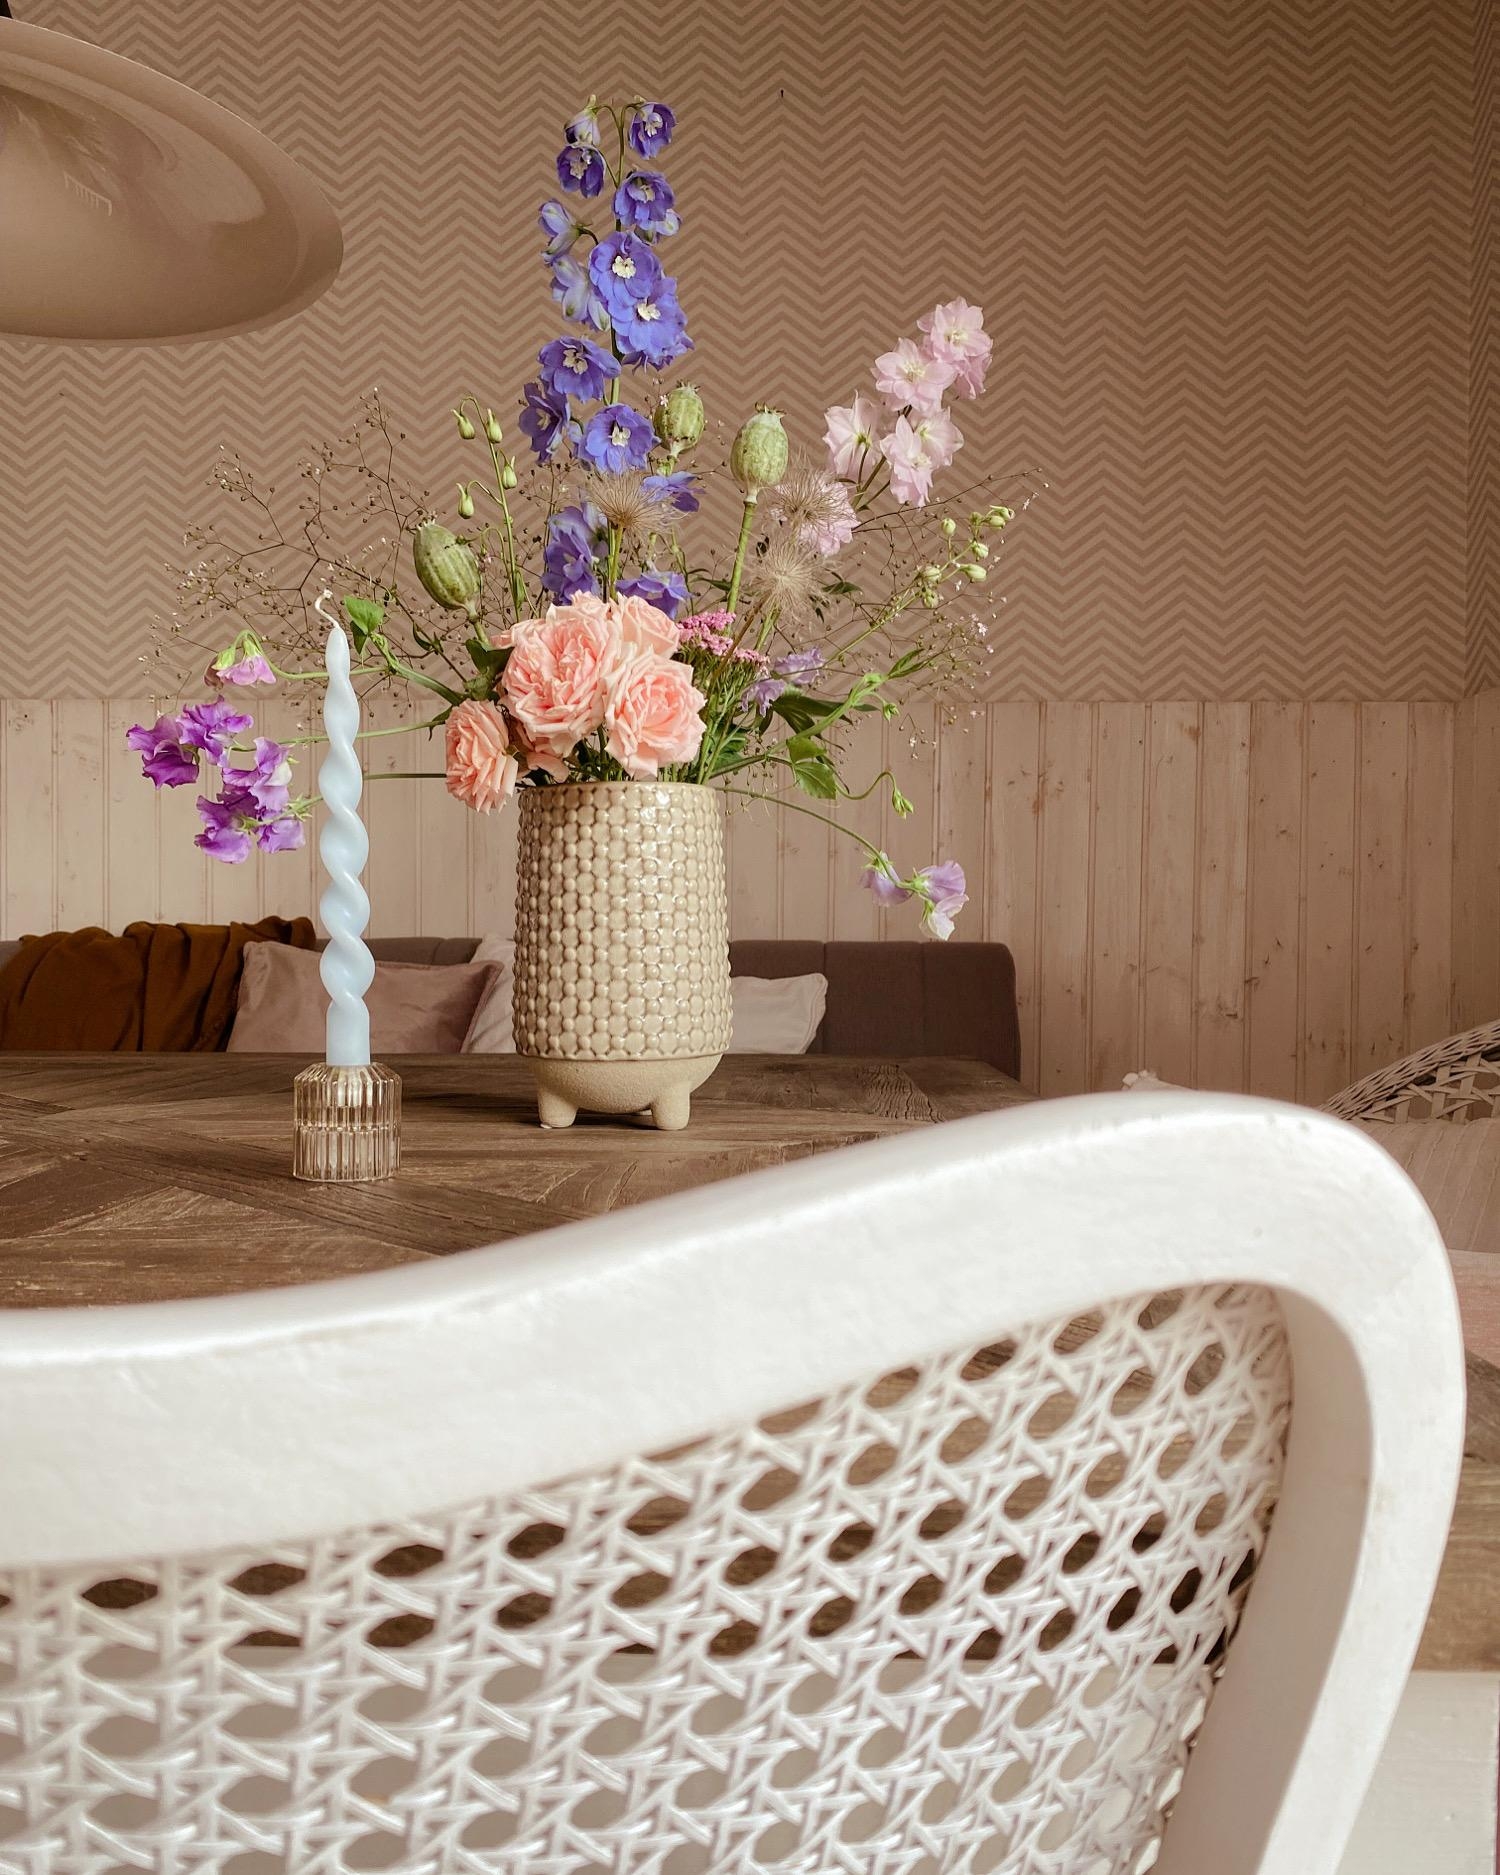 Esszimmer
#tabledecor#blooms#photooftheday#flowersmakemehappy#skandistyle#homesweethome#esstisch